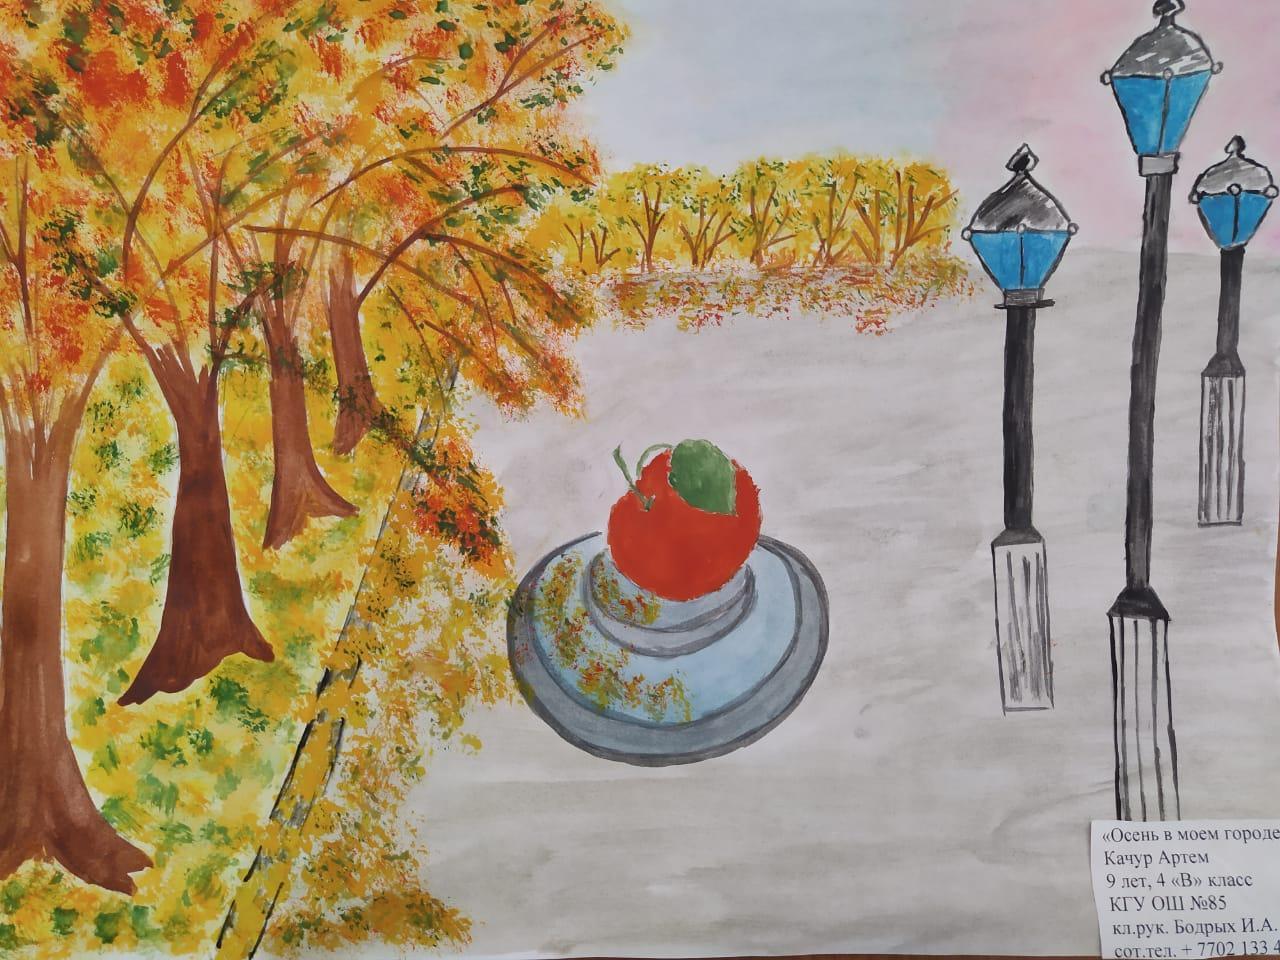 Онлайн-конкурс рисунков "Осень в моем городе"